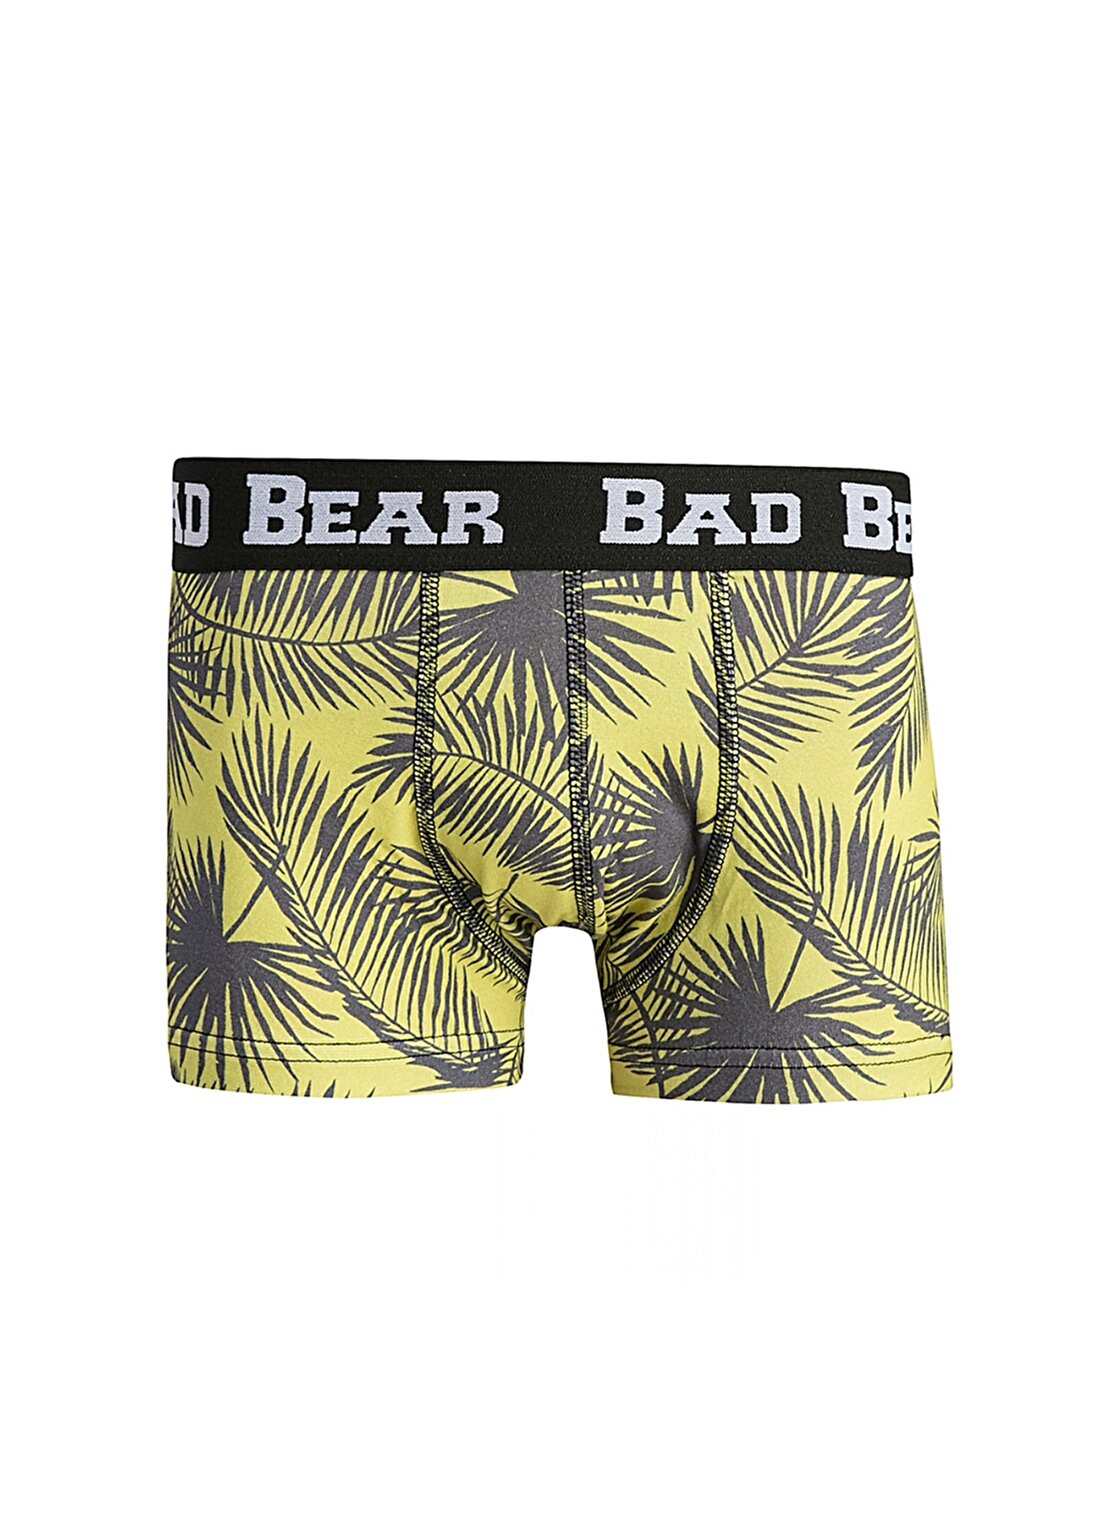 Bad Bear Limon Boxer